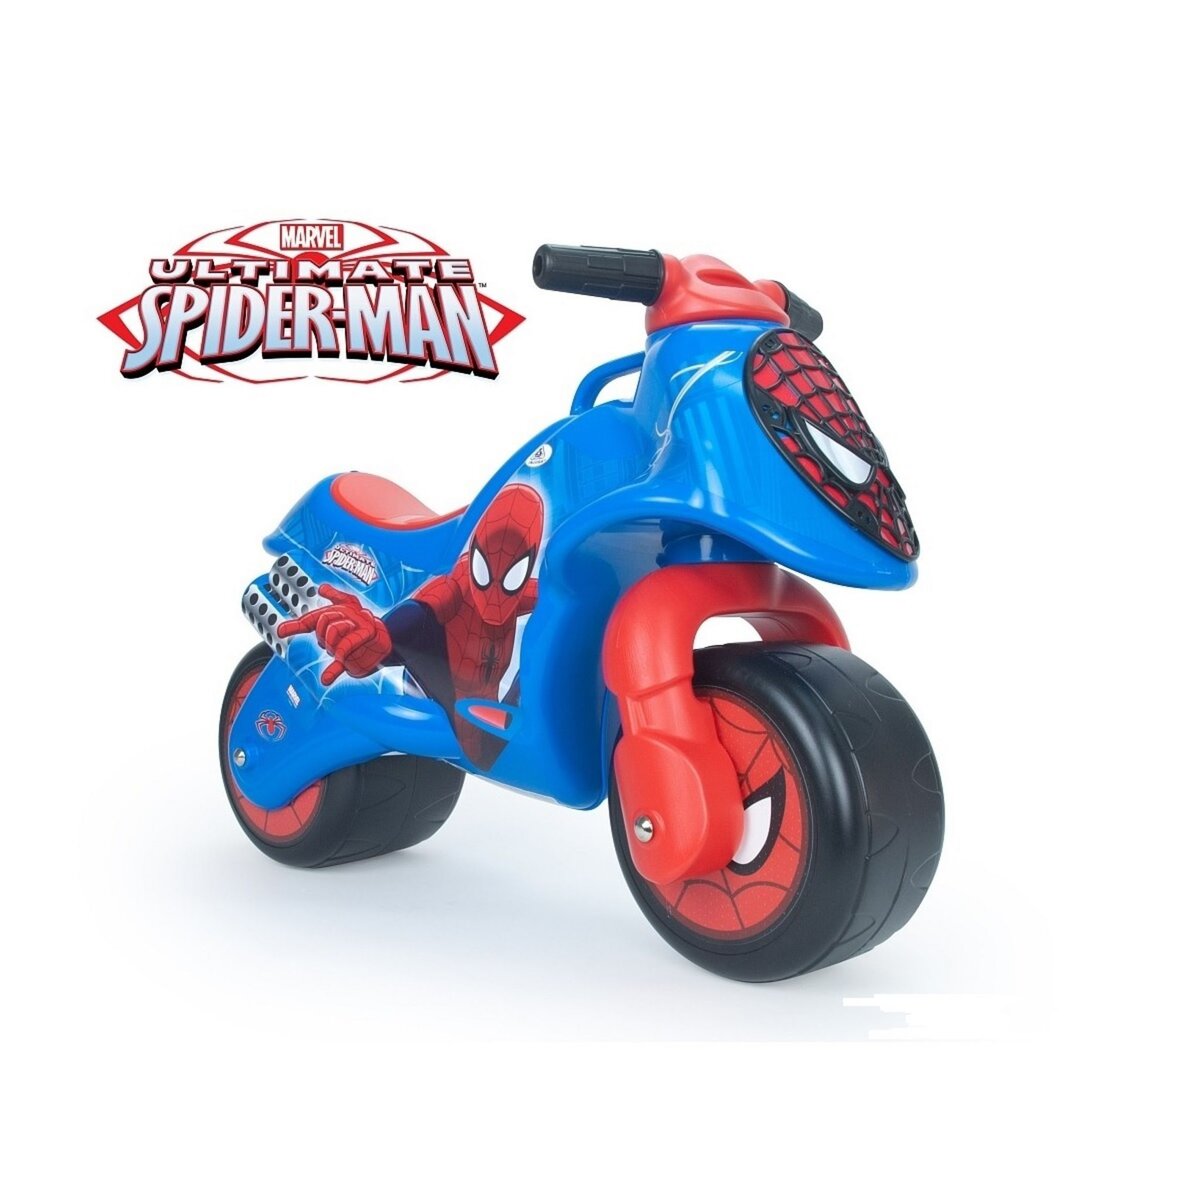 Jouet Spiderman 460515 Officiel: Achetez En ligne en Promo